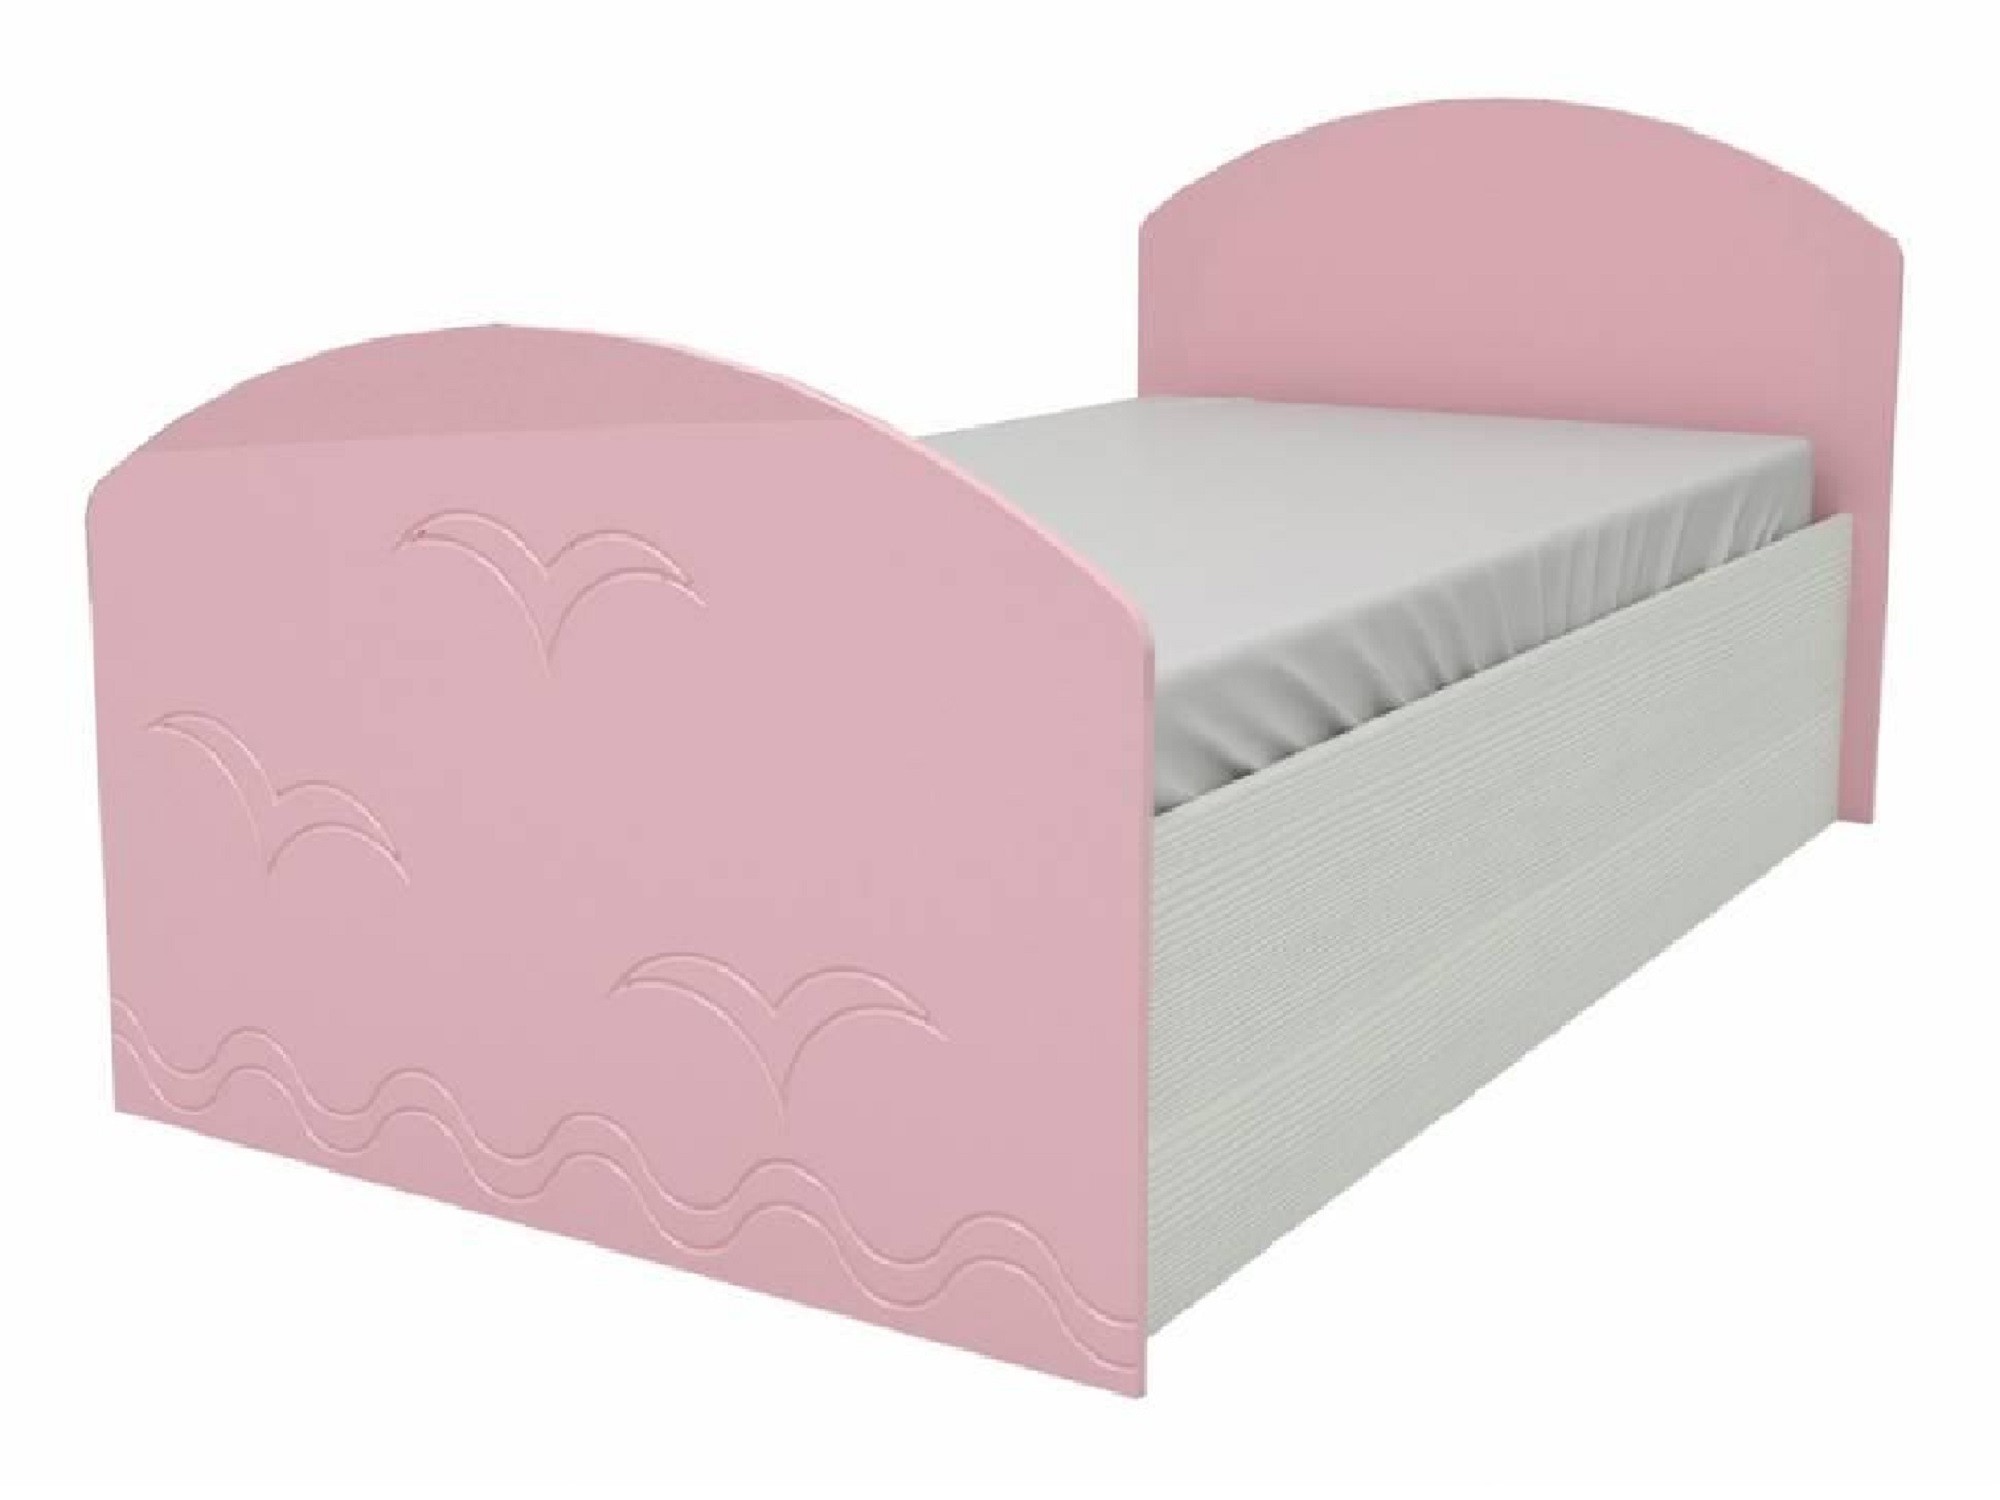 Юниор-2 Детская кровать 80, металлик (Розовый металлик, Дуб белёный) Дуб белёный, МДФ, ЛДСП юниор 2 детская кровать 80 матовый розовый дуб белёный розовый мдф лдсп